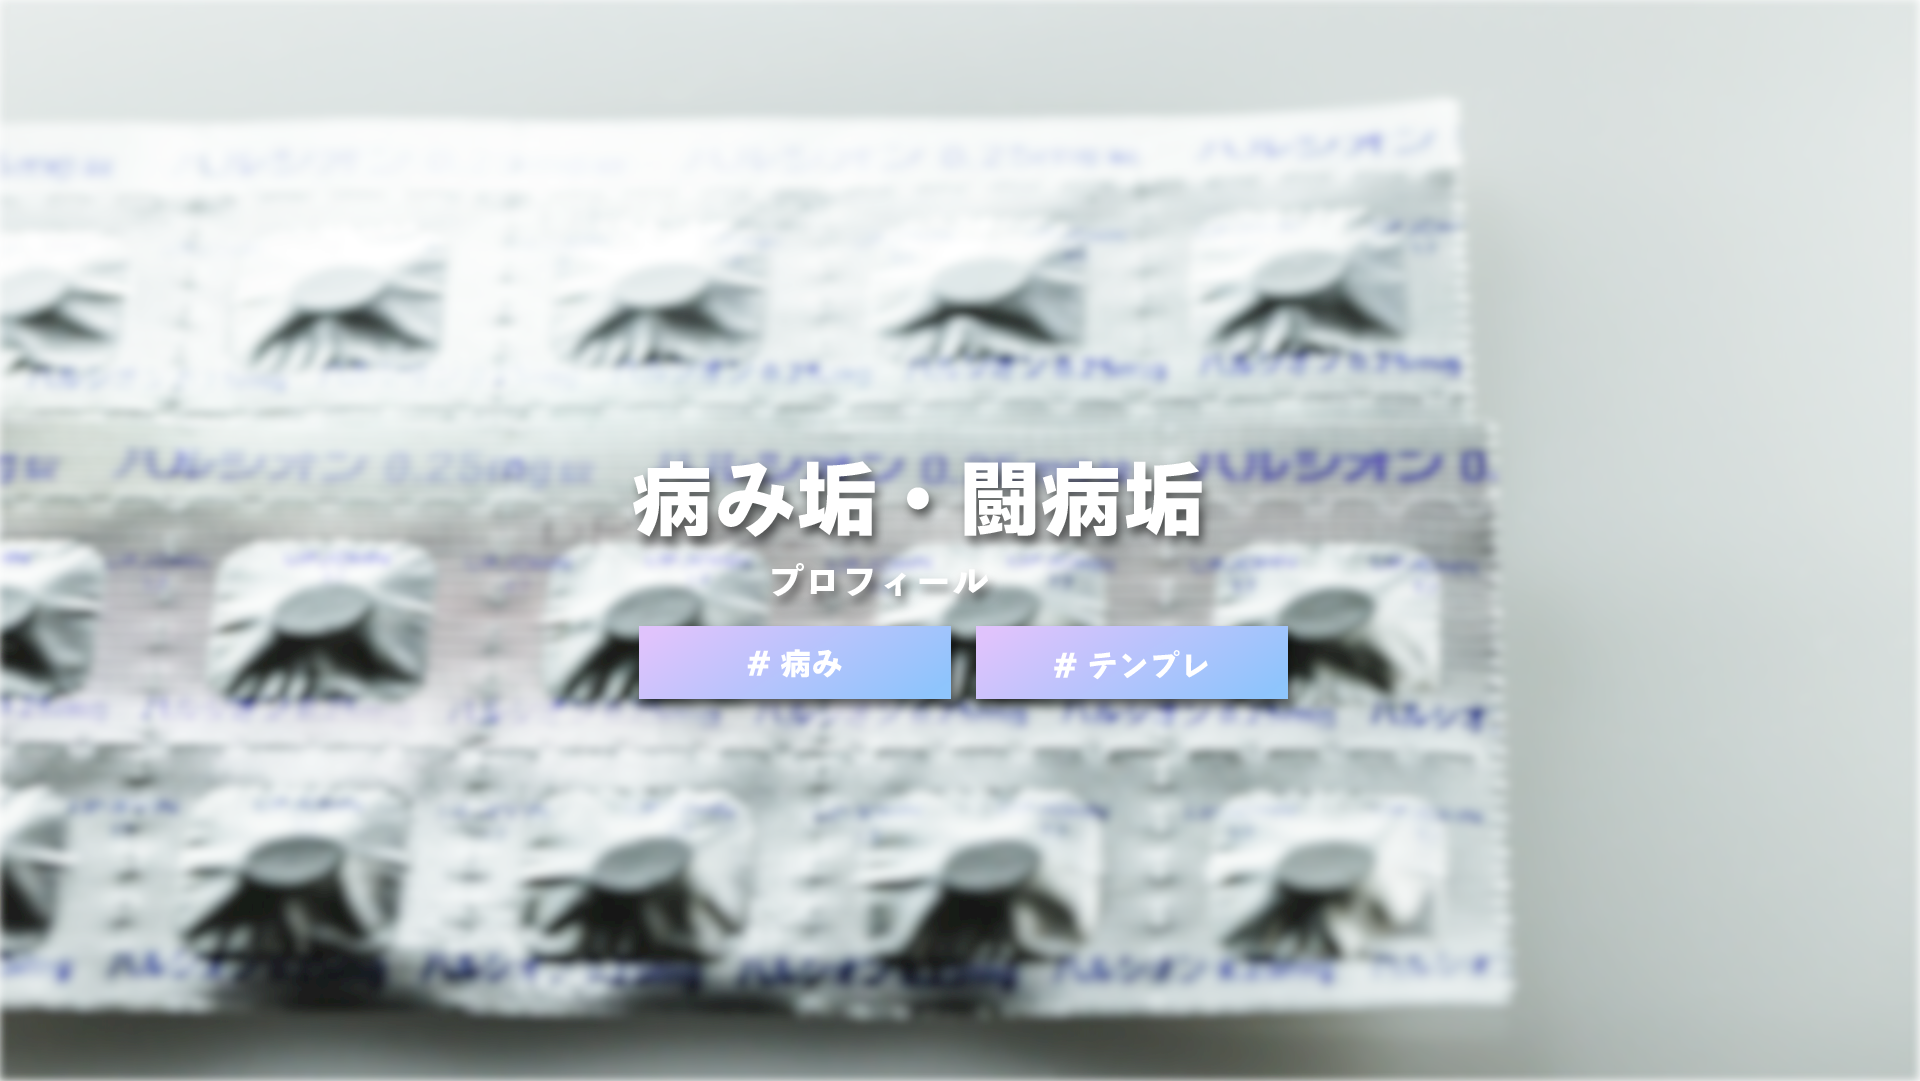 【テンプレート】病み垢・闘病垢の自己紹介カード